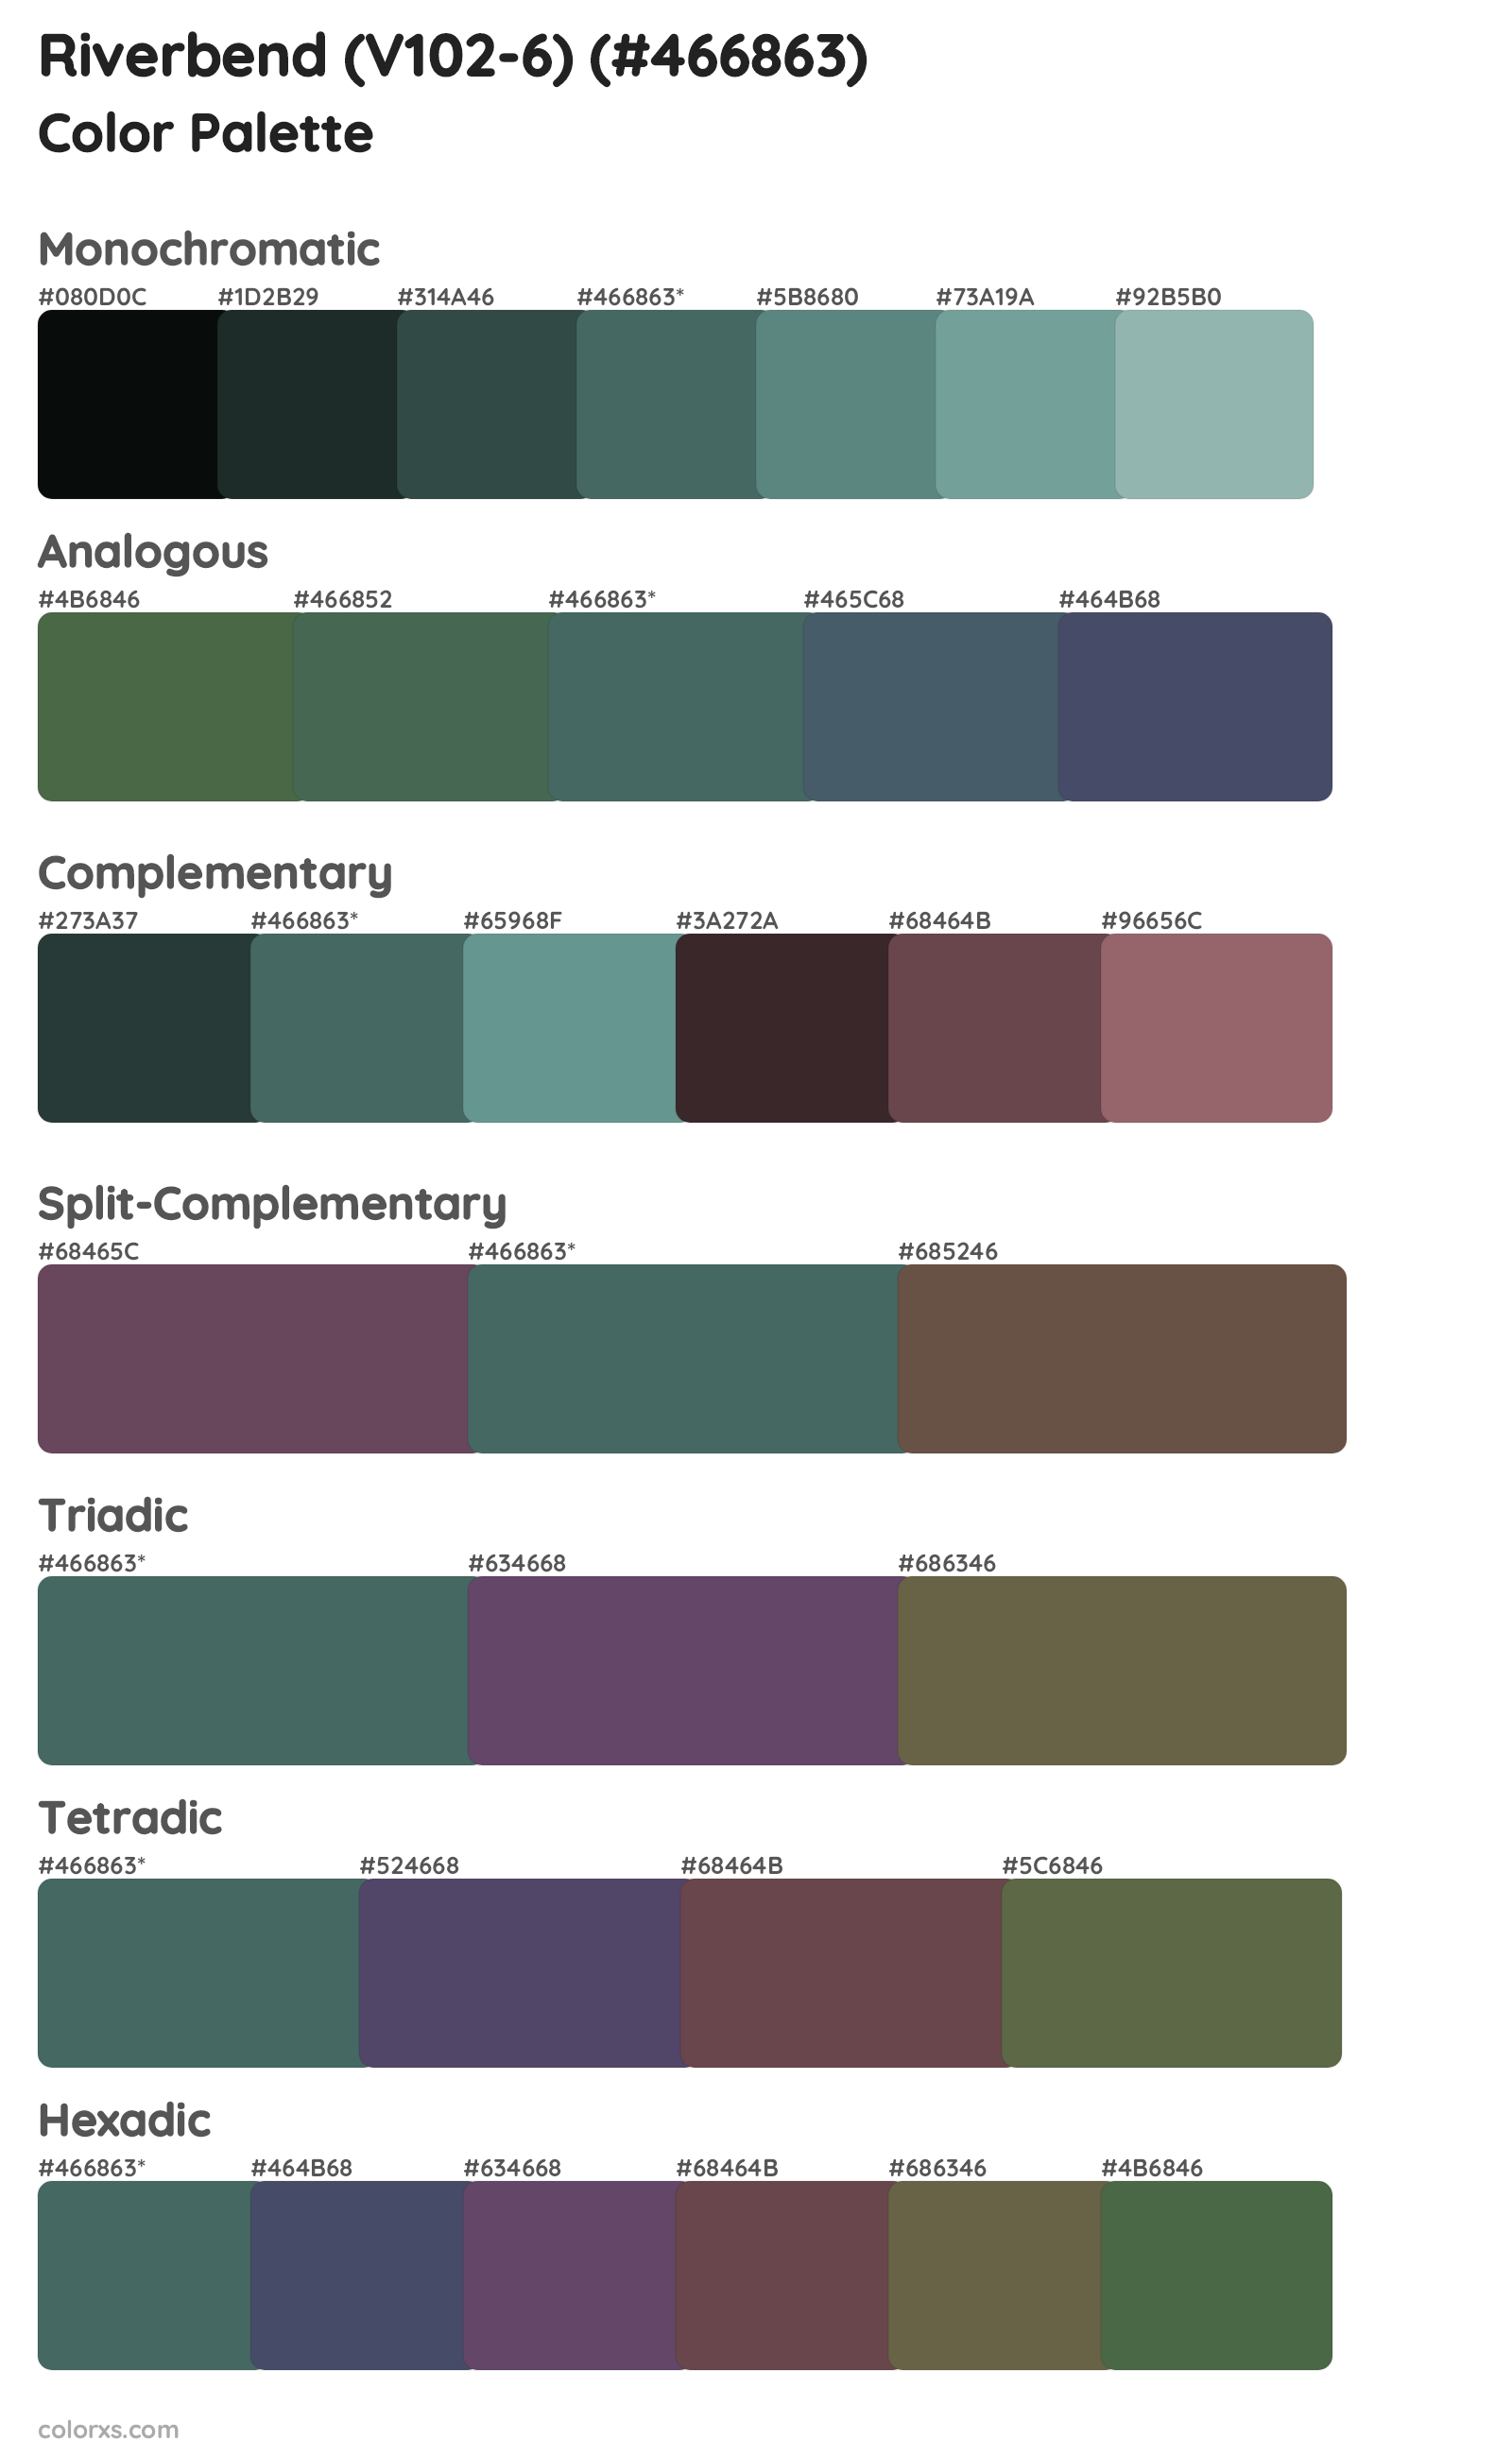 Riverbend (V102-6) Color Scheme Palettes